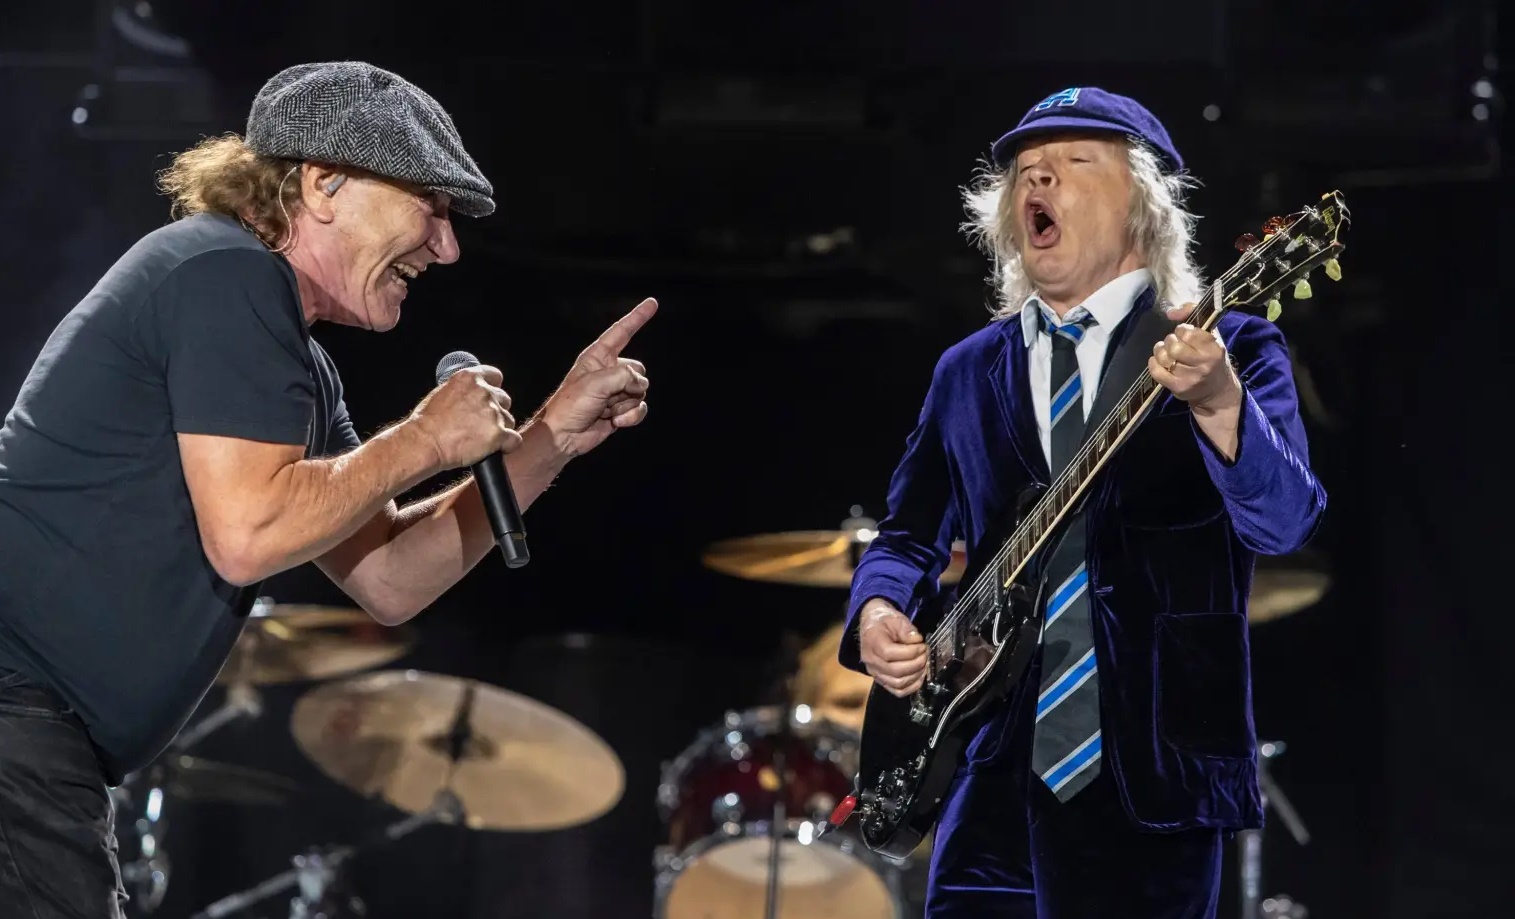 Gelsenkirchen: Good news for fans ahead of AC/DC concert